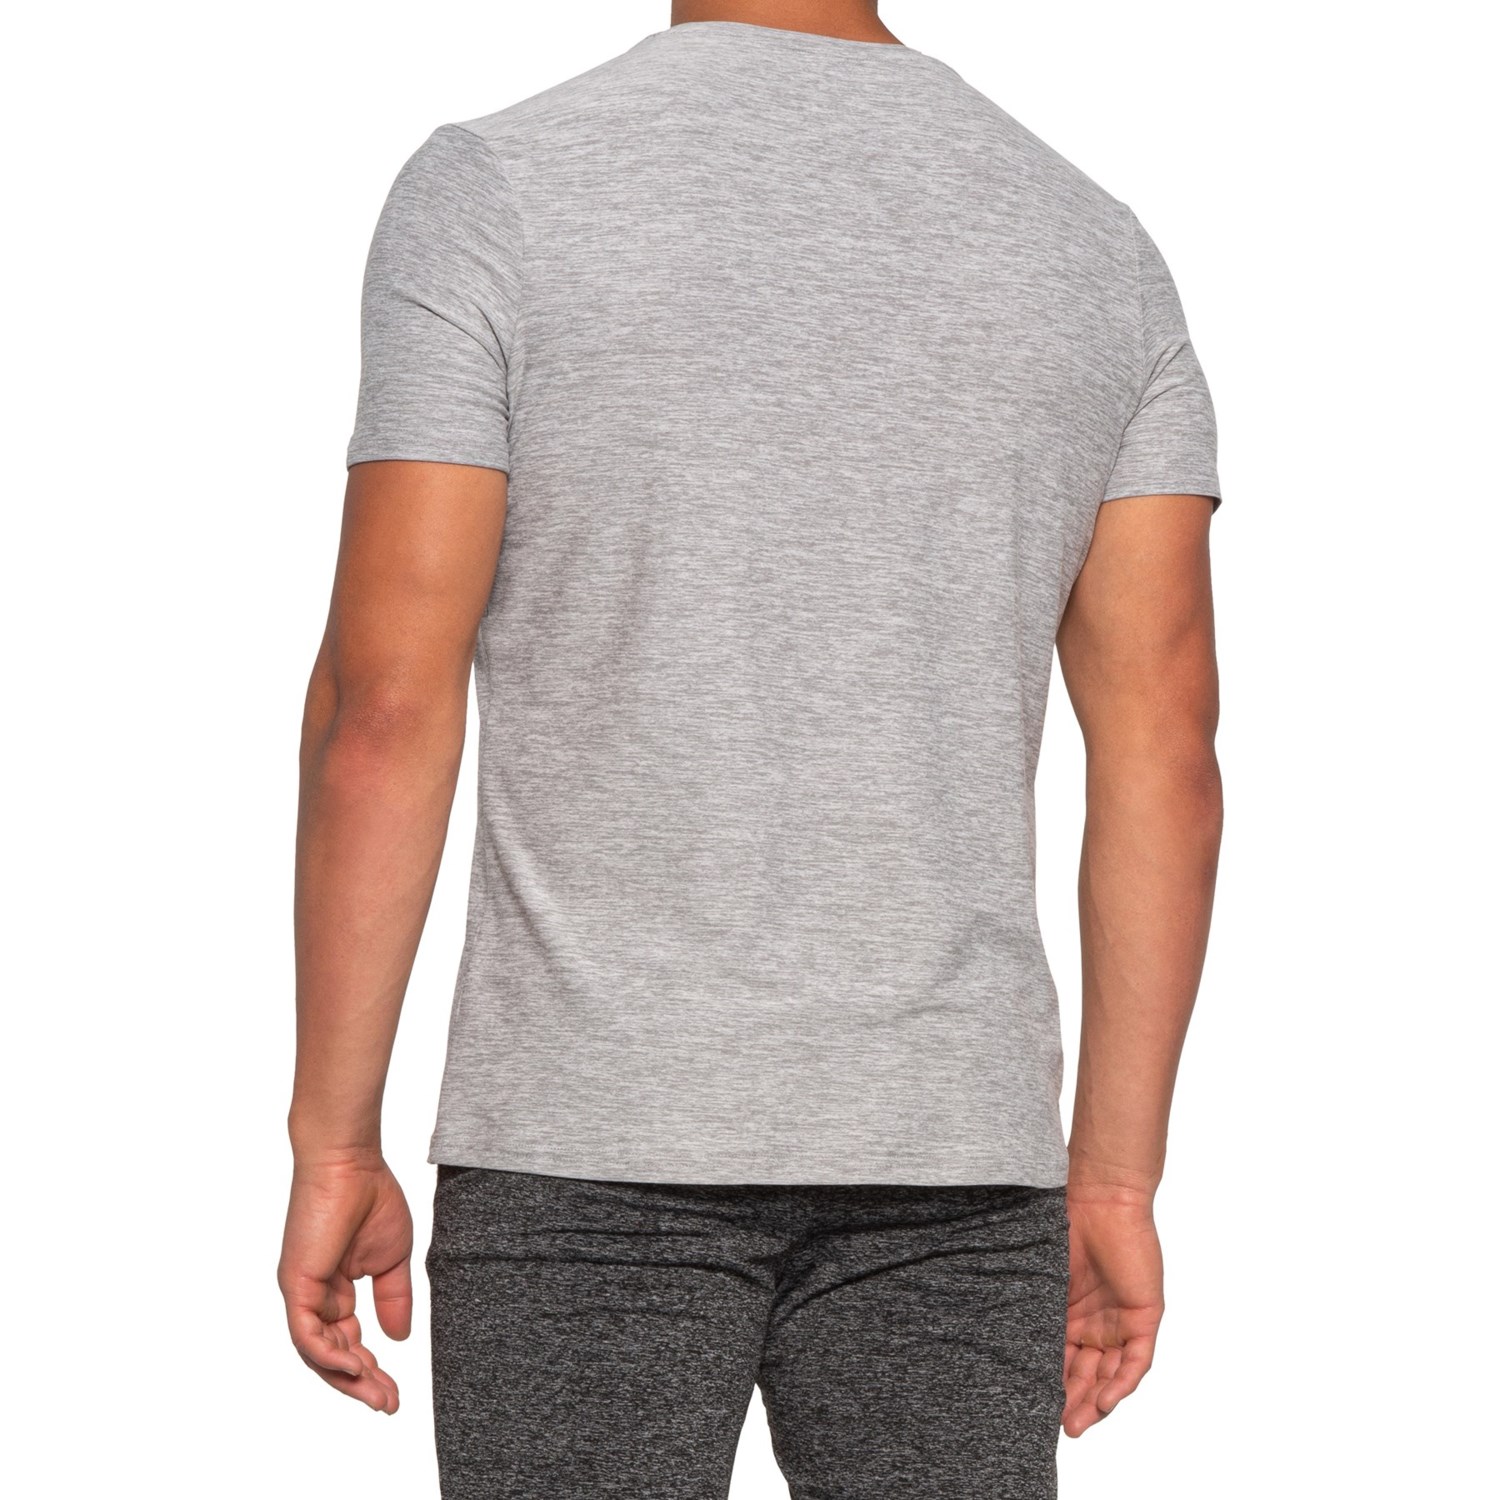 Kyodan Moss Jersey T-Shirt (For Men) - Save 50%